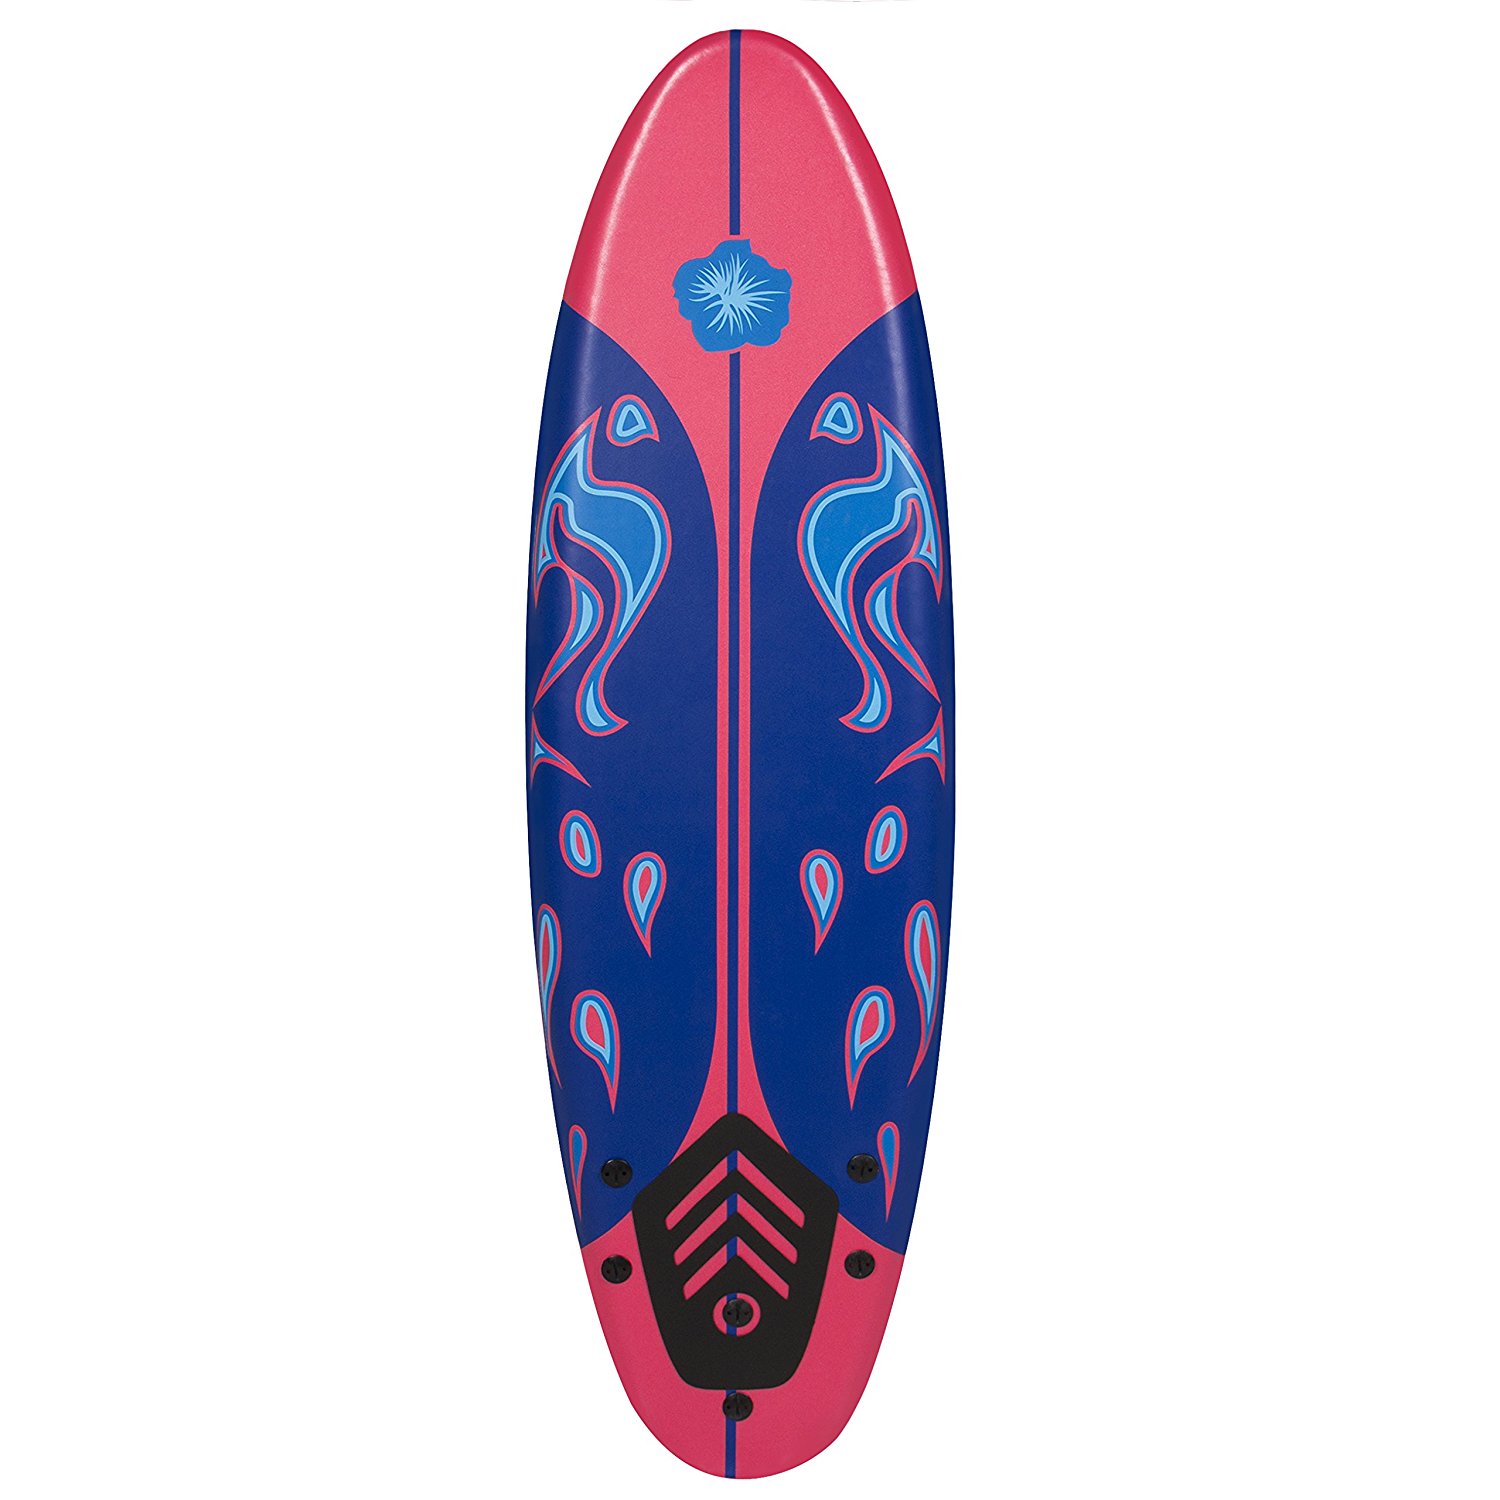 Surf board photo